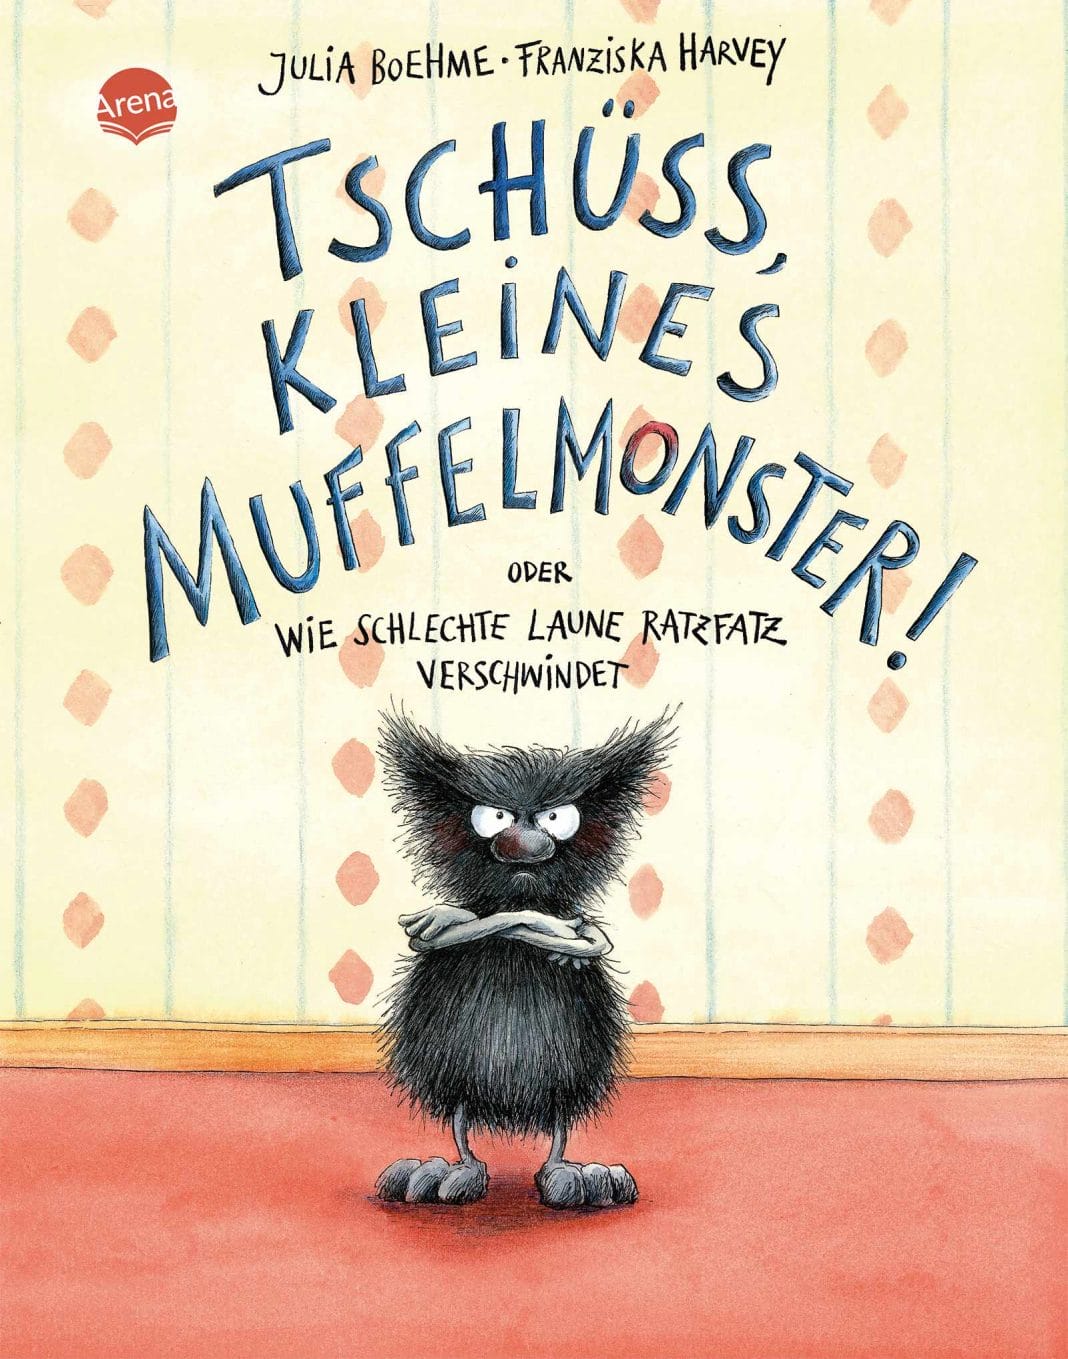 Kinderbuch Rezension: Tschüss, kleines Muffelmonster! (Bild: Arena Verlag)